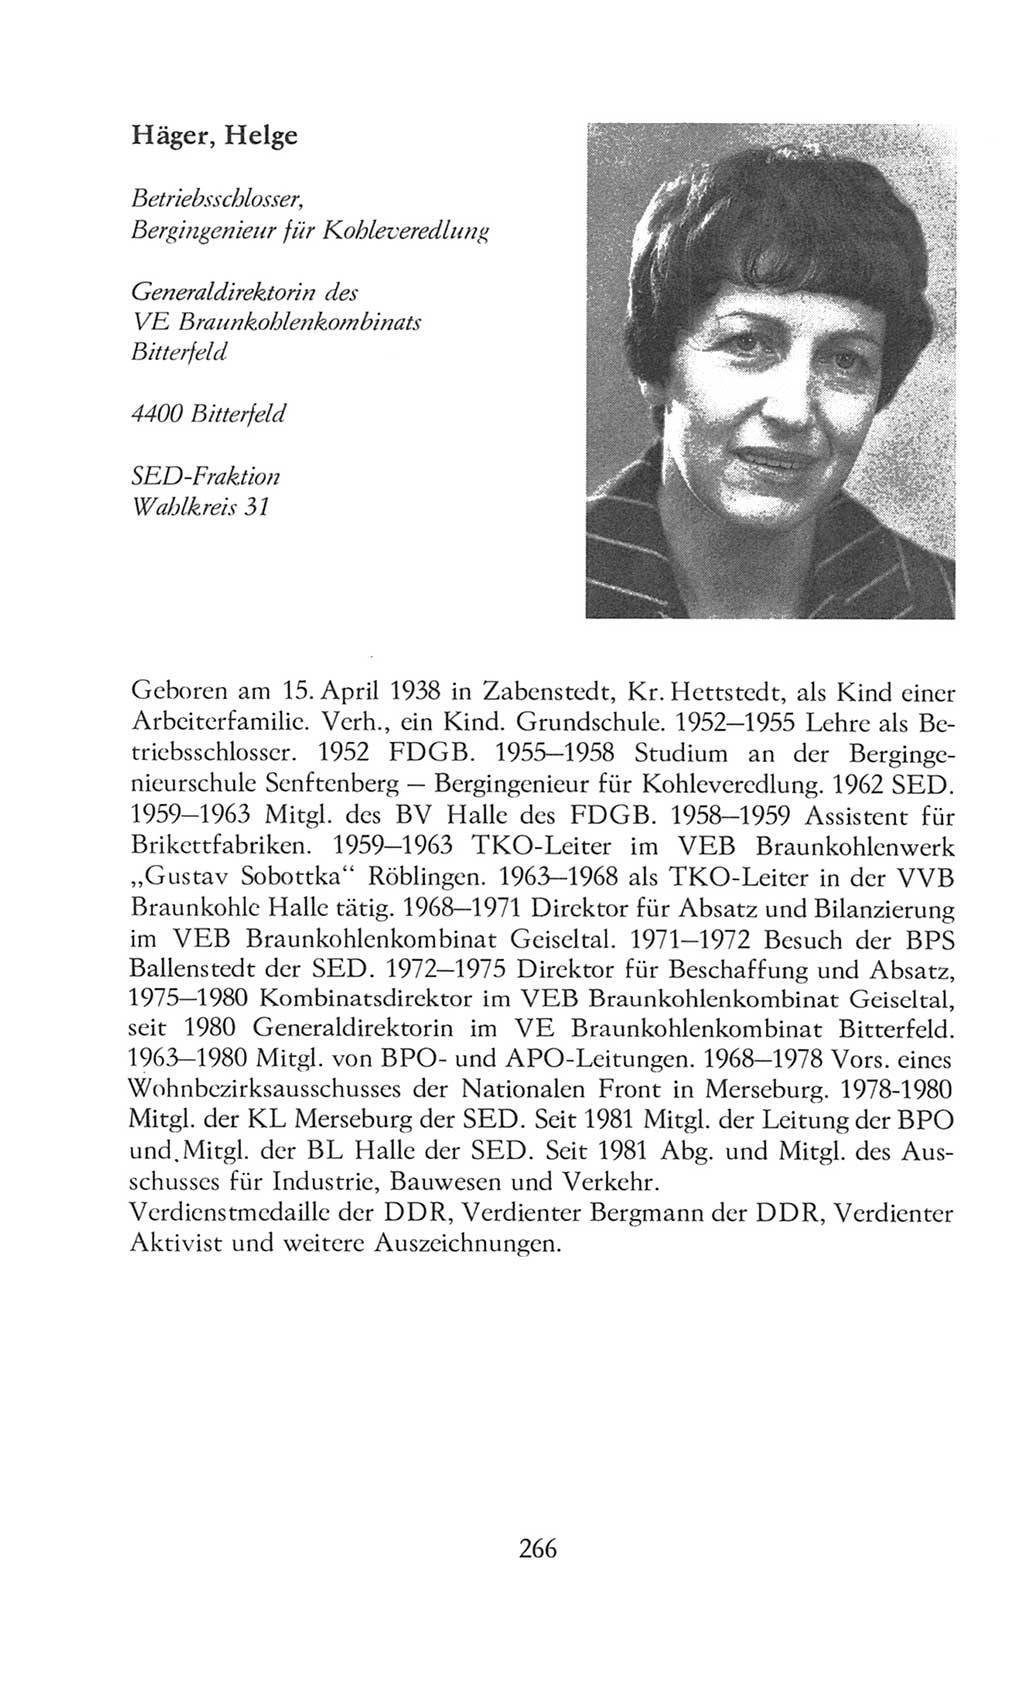 Volkskammer (VK) der Deutschen Demokratischen Republik (DDR), 8. Wahlperiode 1981-1986, Seite 266 (VK. DDR 8. WP. 1981-1986, S. 266)